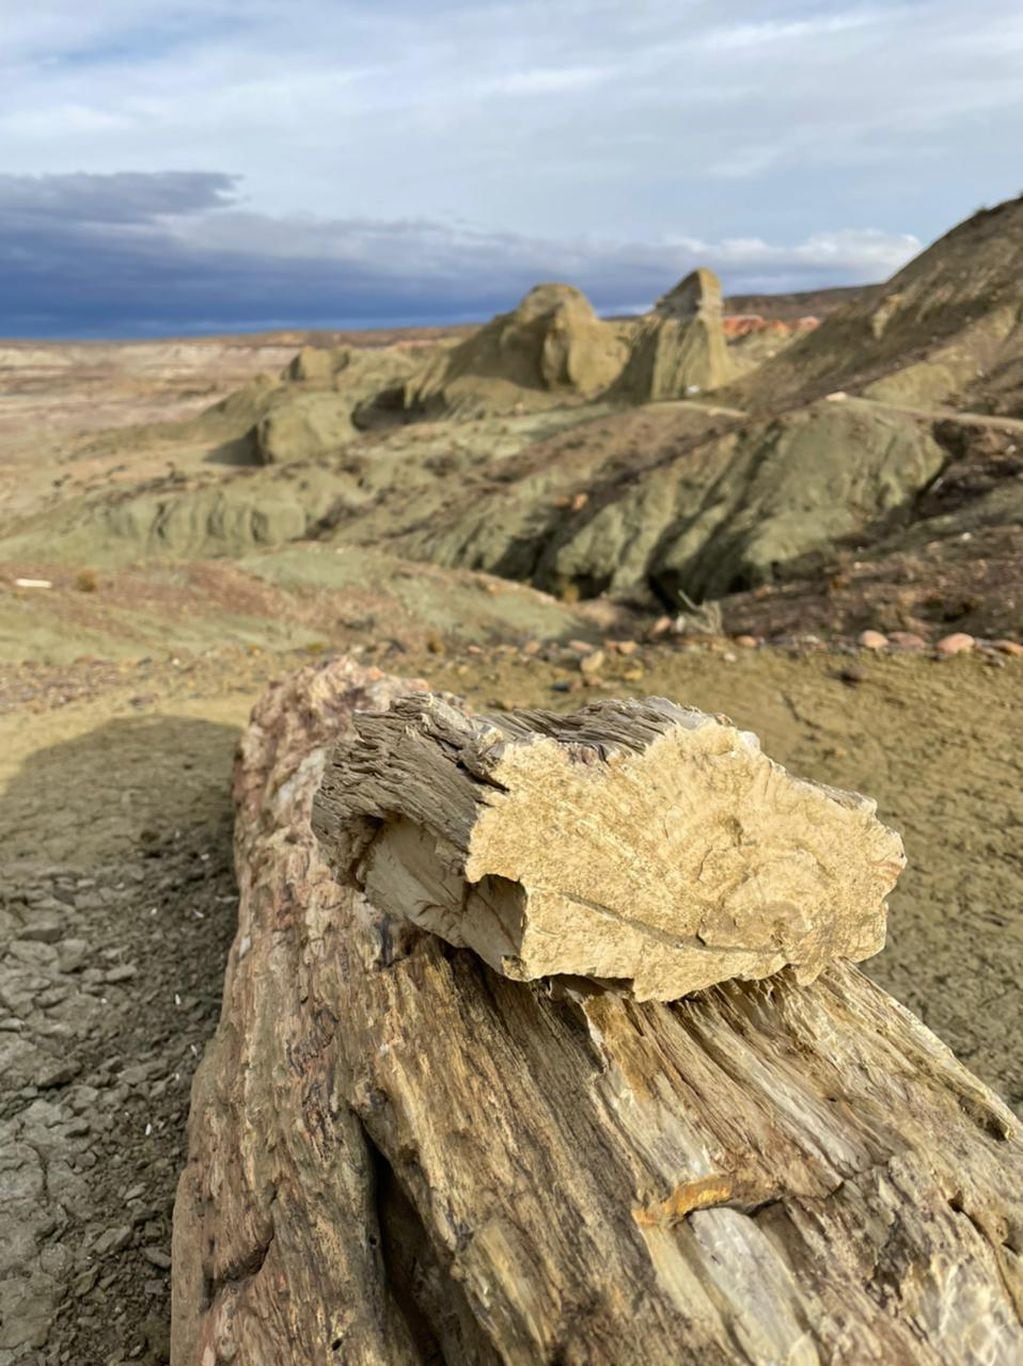 A lo largo del sendero es posible encontrar los troncos petrificados en el medio del camino. - Los Andes